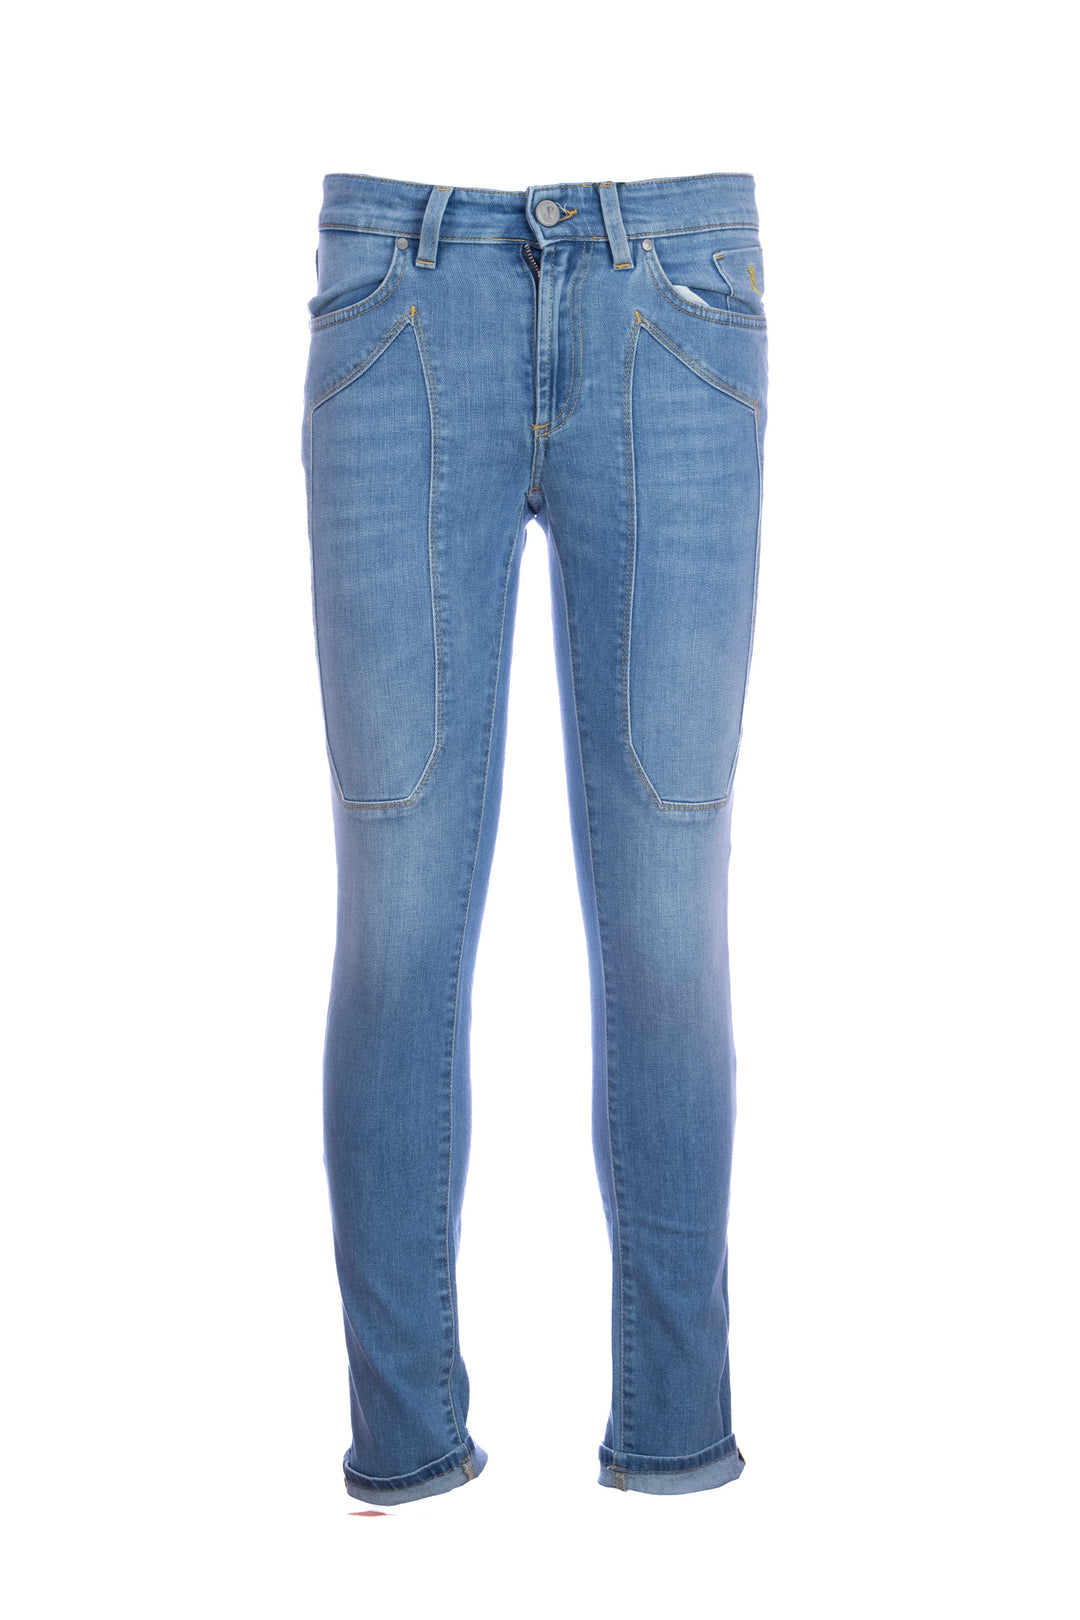 JECKERSON Jeans cinque tasche in denim stretch lavaggio chiaro con toppe  JKUPA077 KI001